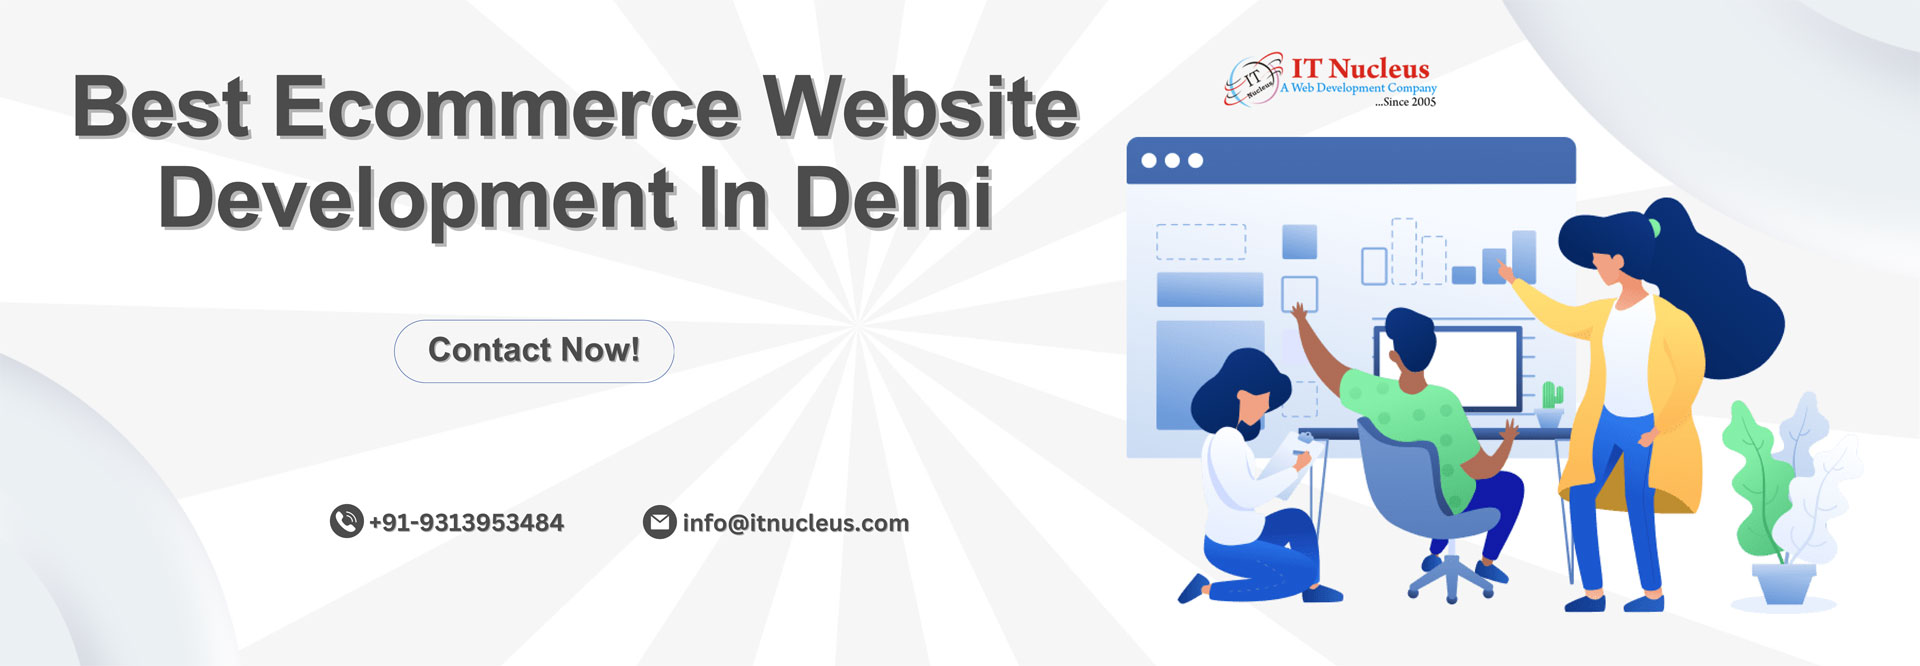 Best Ecommerce Website Development In Delhi